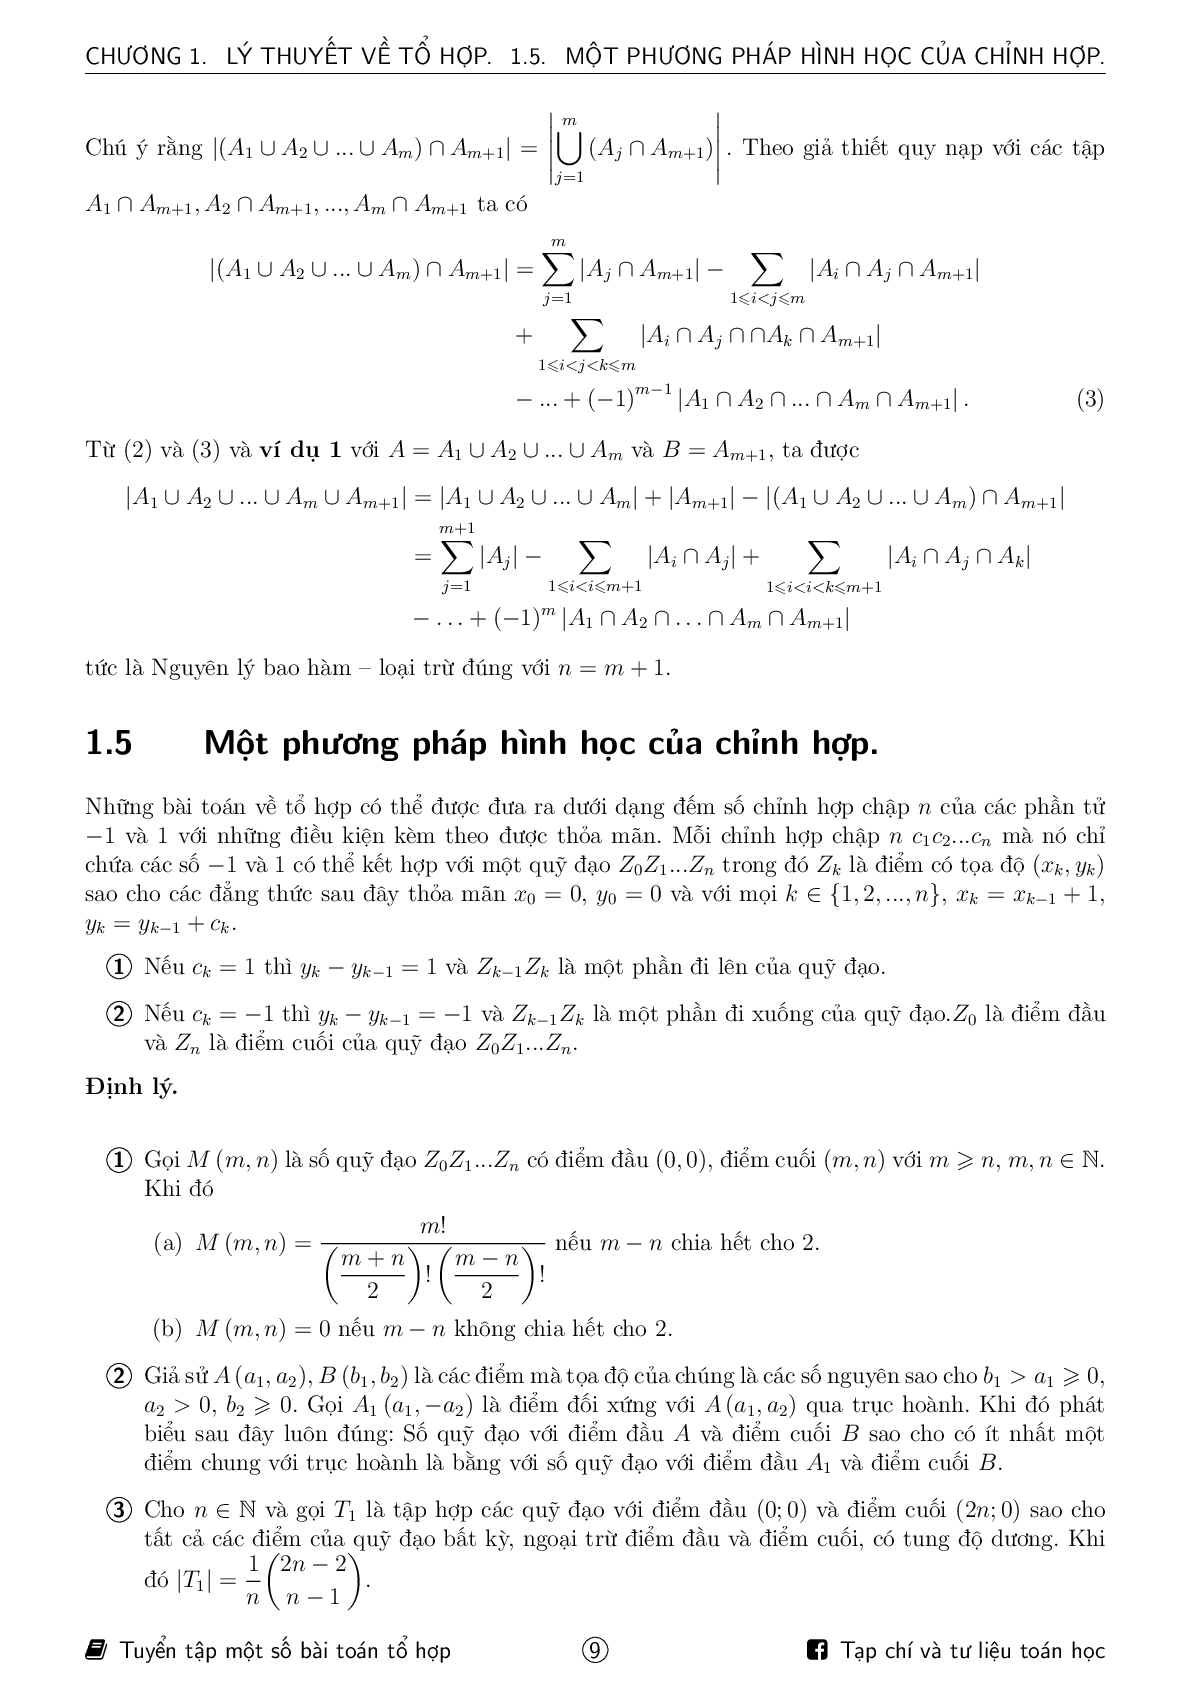 Tuyển tập một số bài toán tổ hợp ôn thi HSG Toán (trang 9)